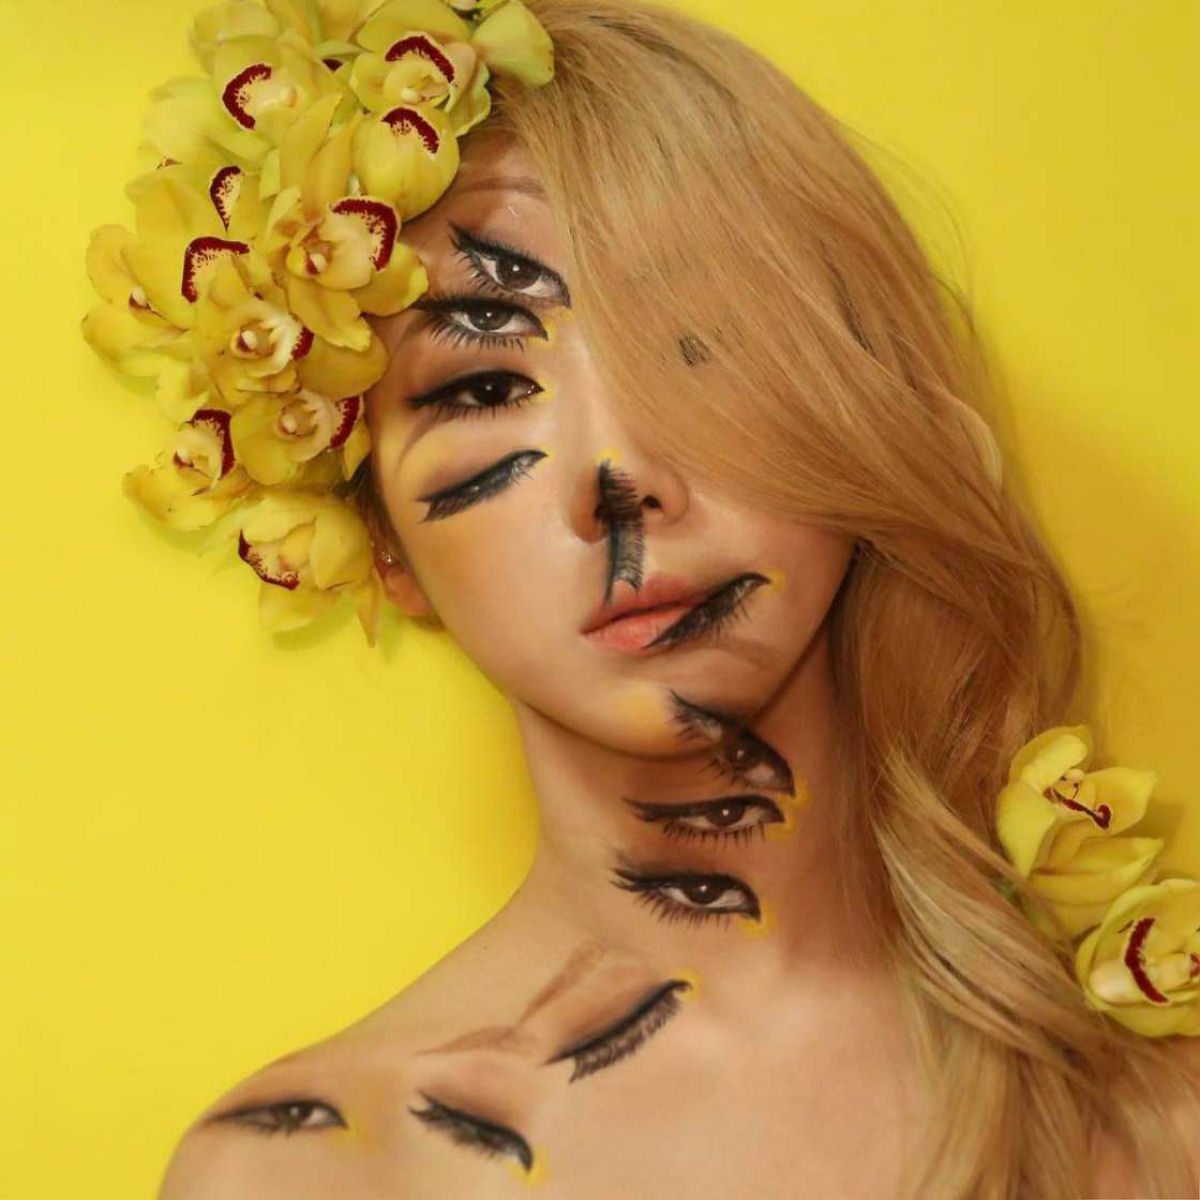 Artista sul-coreana usa maquiagem para transformar sua face em iluses pticas fascinantes 15